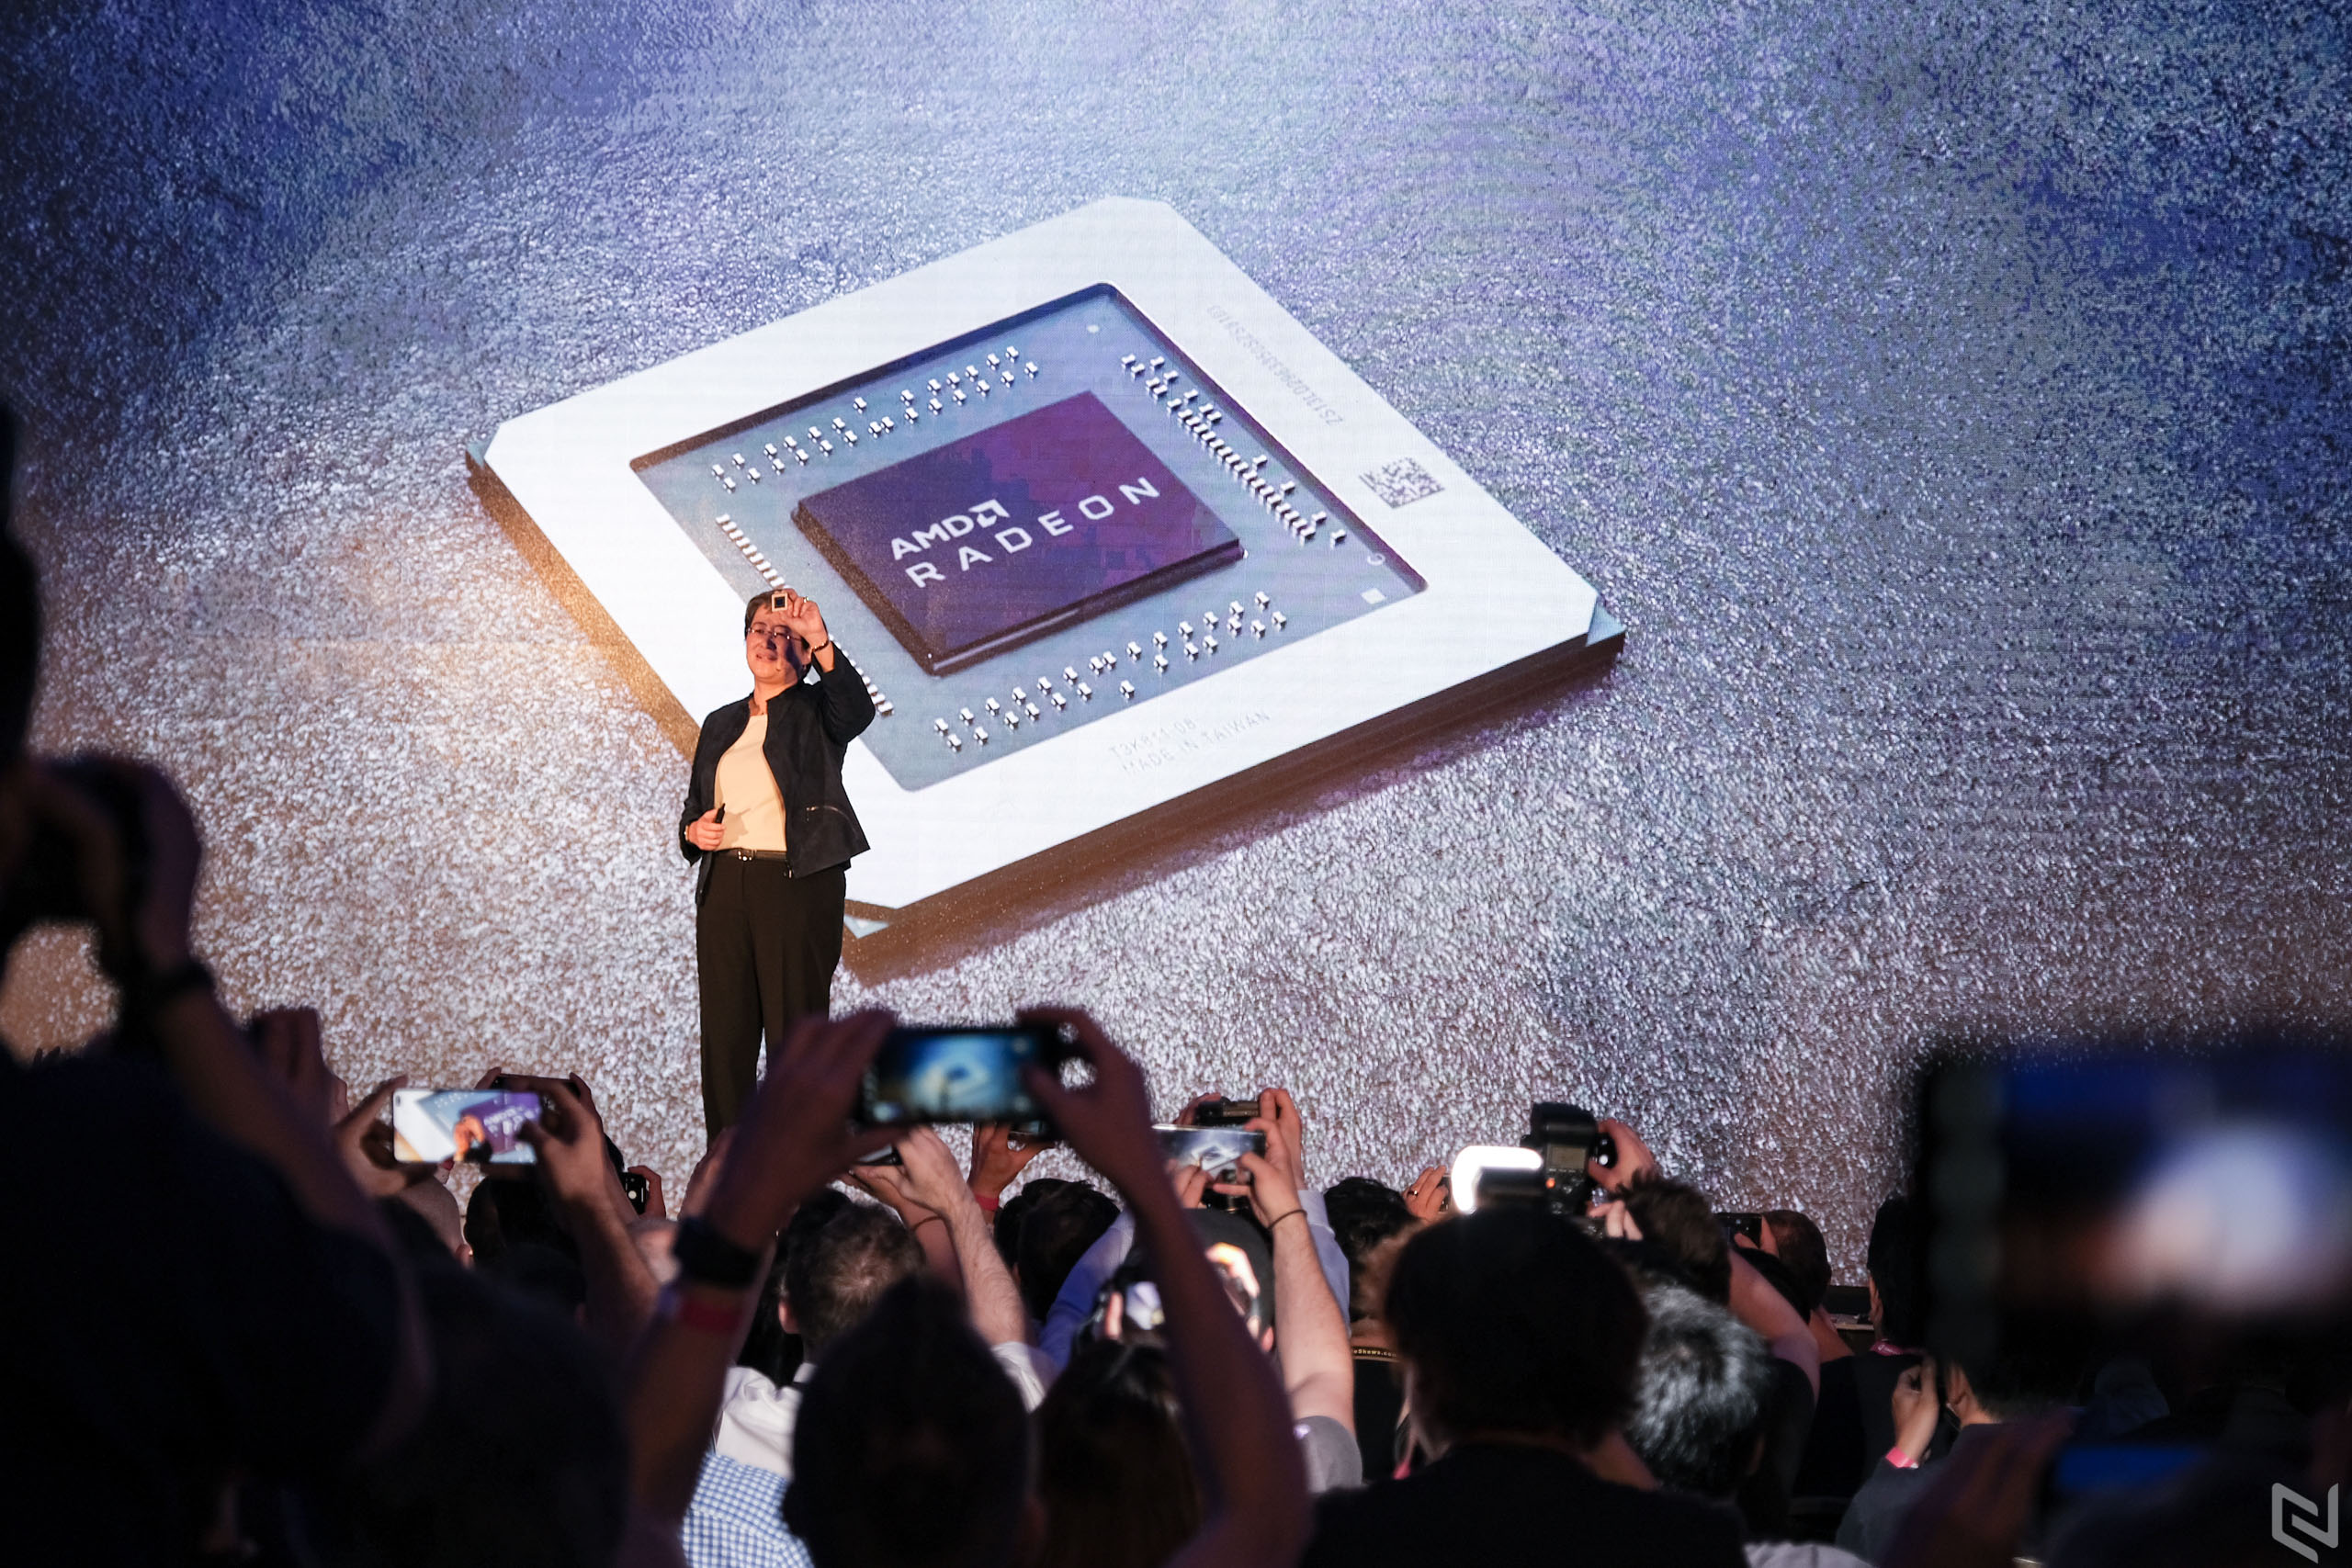 AMD ra mắt GPU dựa trên công nghệ Navi tiến trình 7nm đầu tiên - Radeon RX 5700 cho hiệu năng hơn RTX 2070 10%